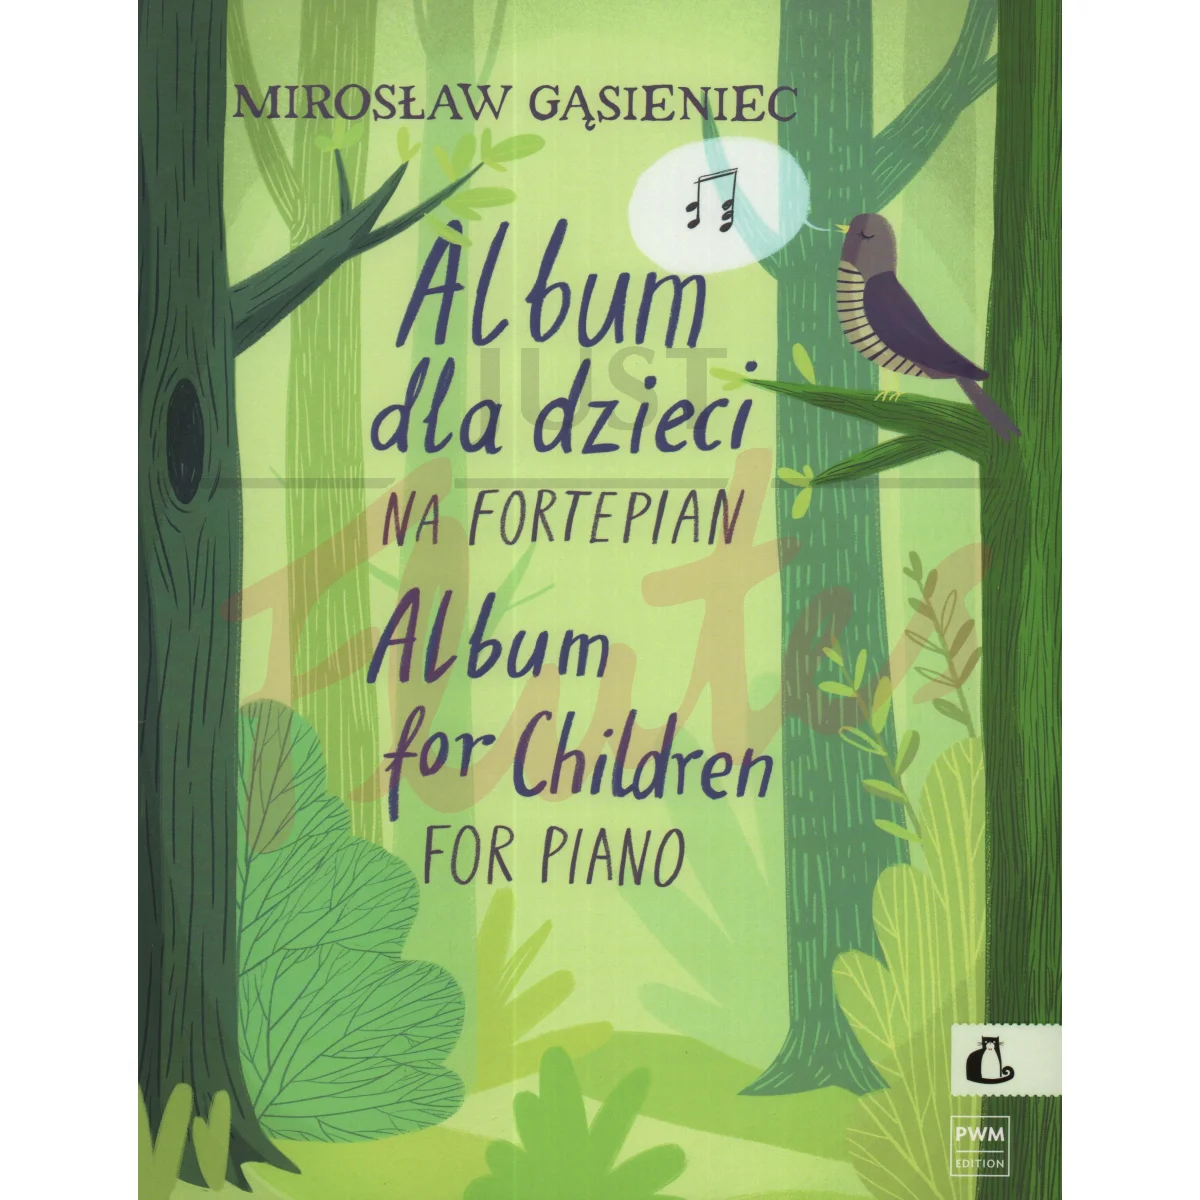 Album for Children for Piano